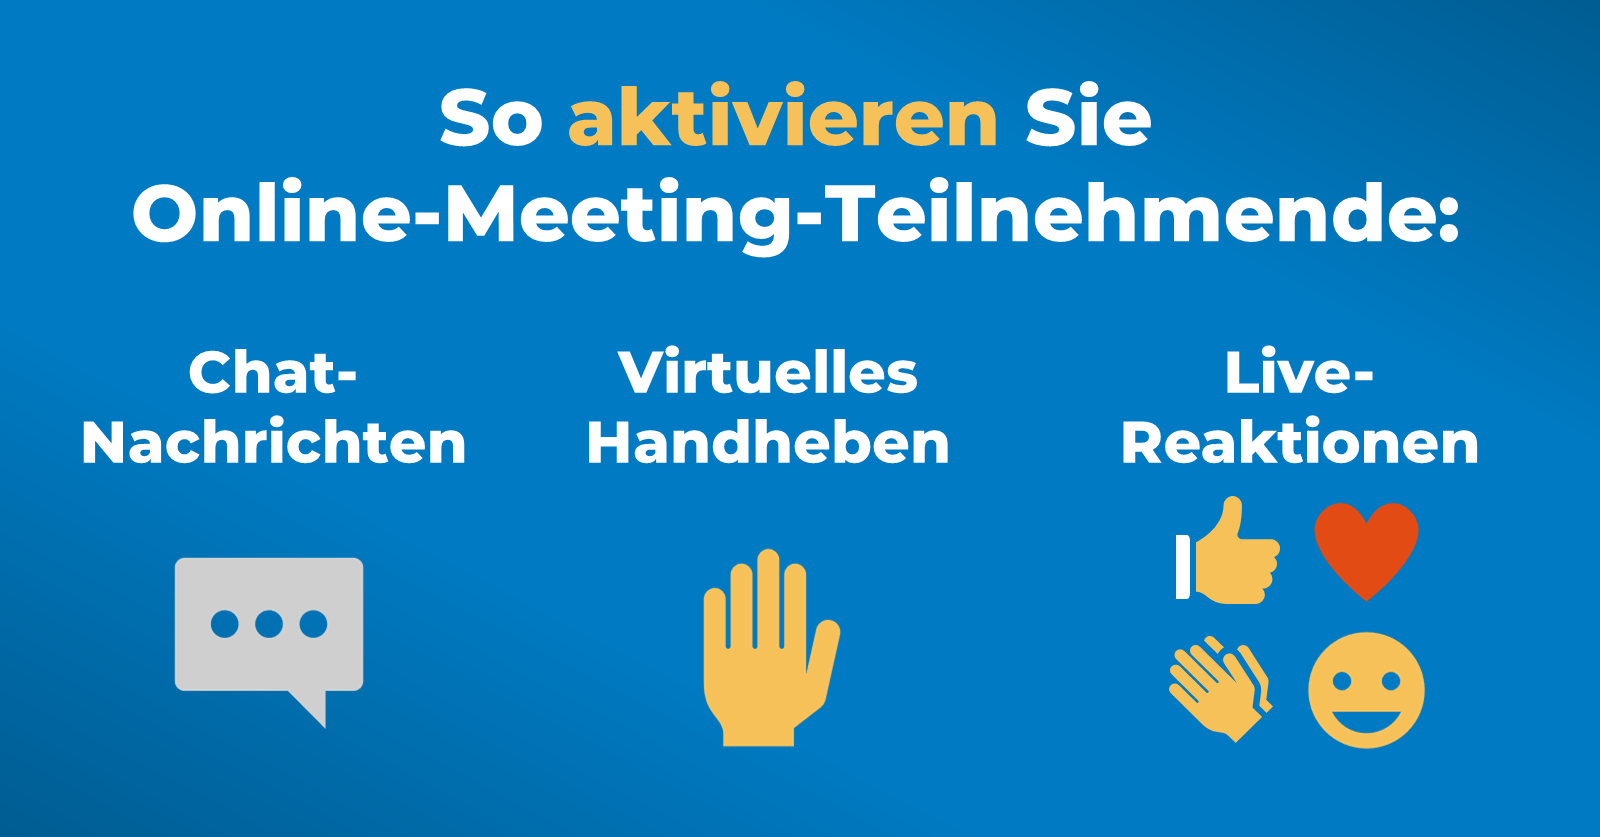 Hybrid-Meetings rocken: So aktivieren Sie Online-Teilnehmende - Chat, Handheben, Live-Reaktionen